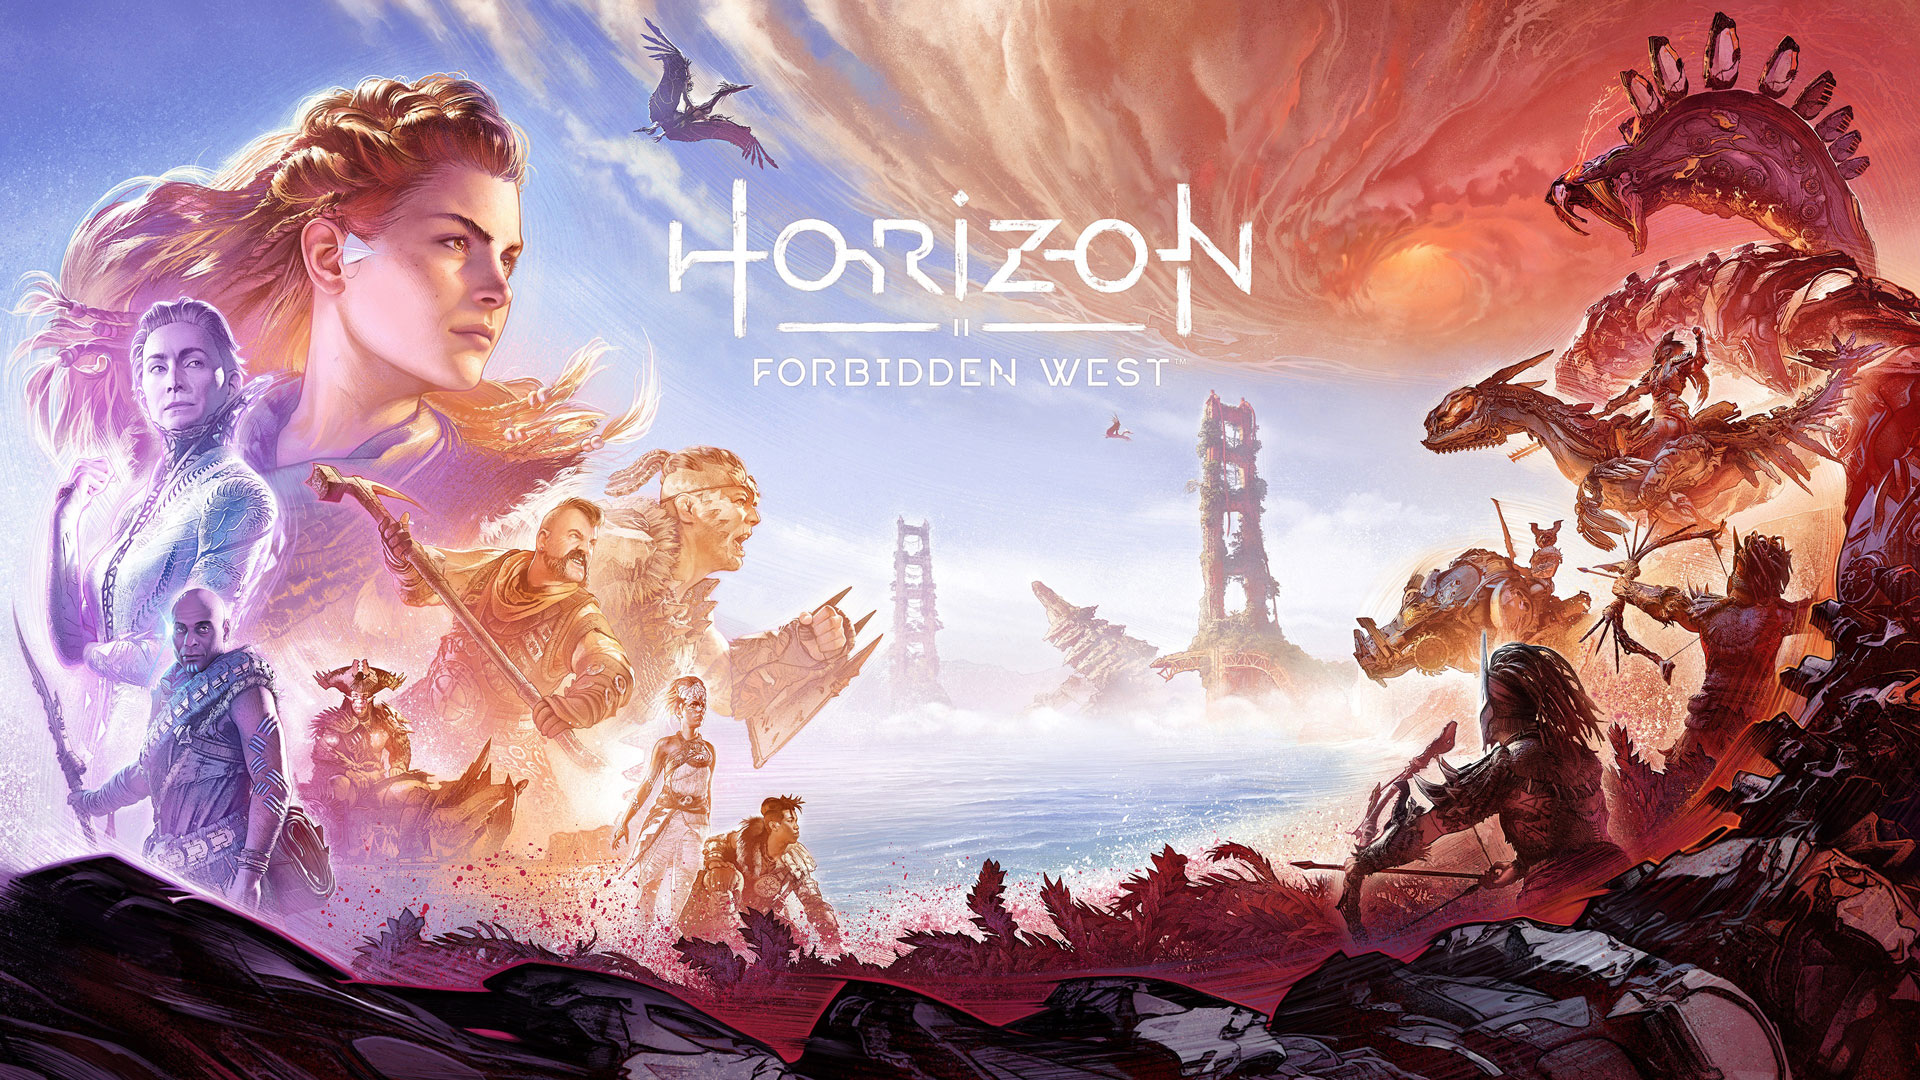 بررسی بازی Horizon Forbidden West (هورایزن فوربیدن وست) استودیو گوریلا شرکت سونی